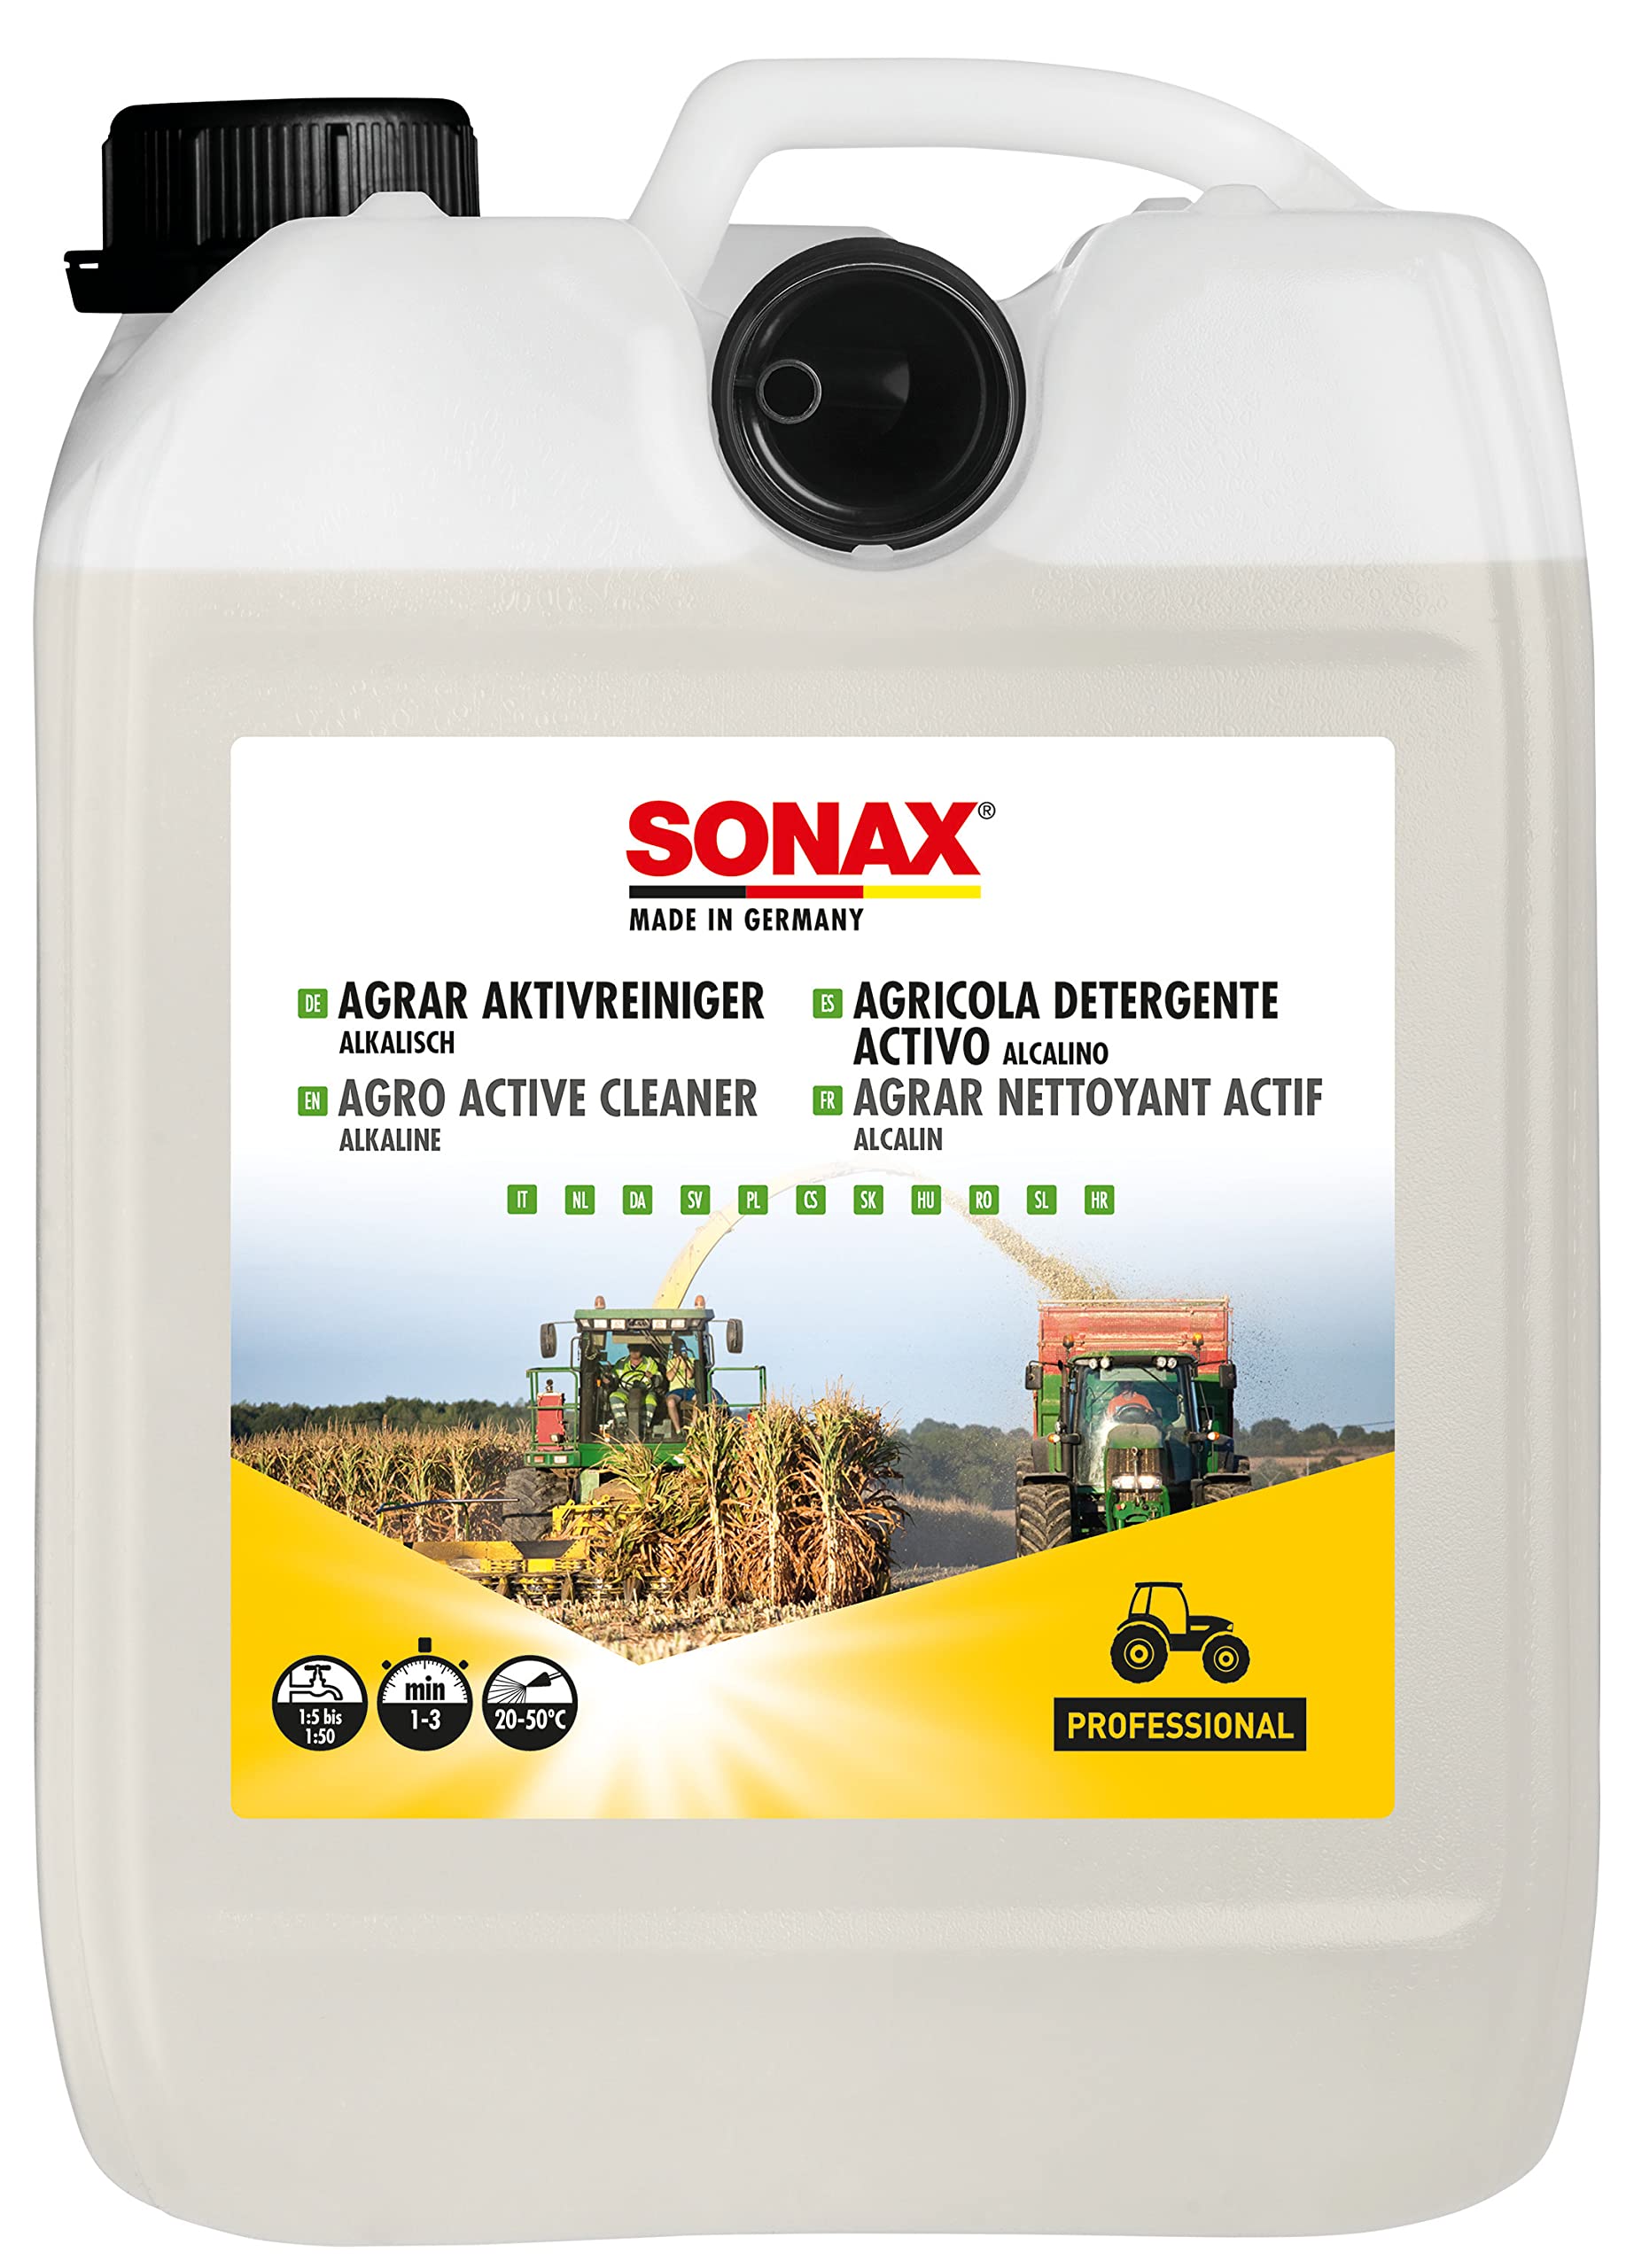 SONAX AGRAR AktivReiniger alkalisch (5 Liter) sehr ergiebiges und effektives Konzentrat, bietet extreme Reinigungsleistung auch bei verhärteten Schmutzbelägen | Art-Nr. 07265000 von SONAX